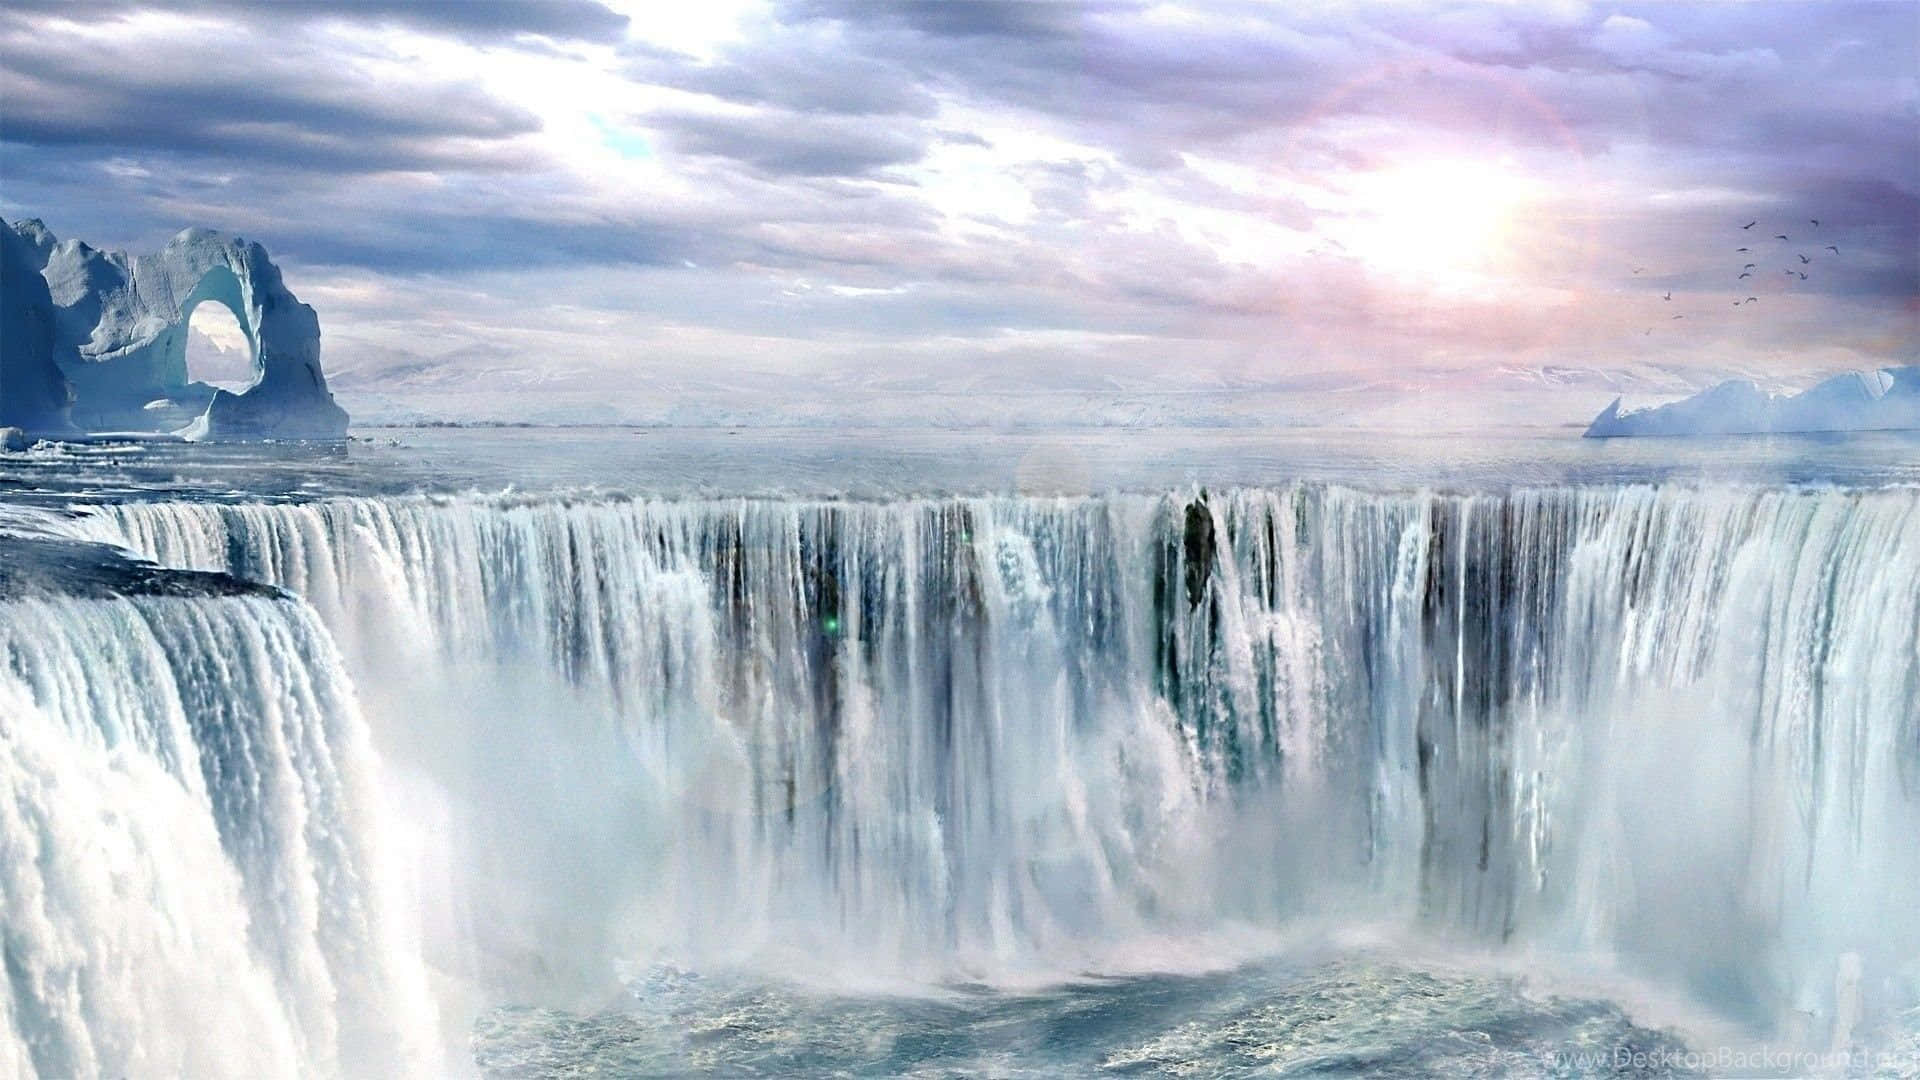 Bakgrundsbildmed Niagara Fallen I Ontario, Kanada. Wallpaper